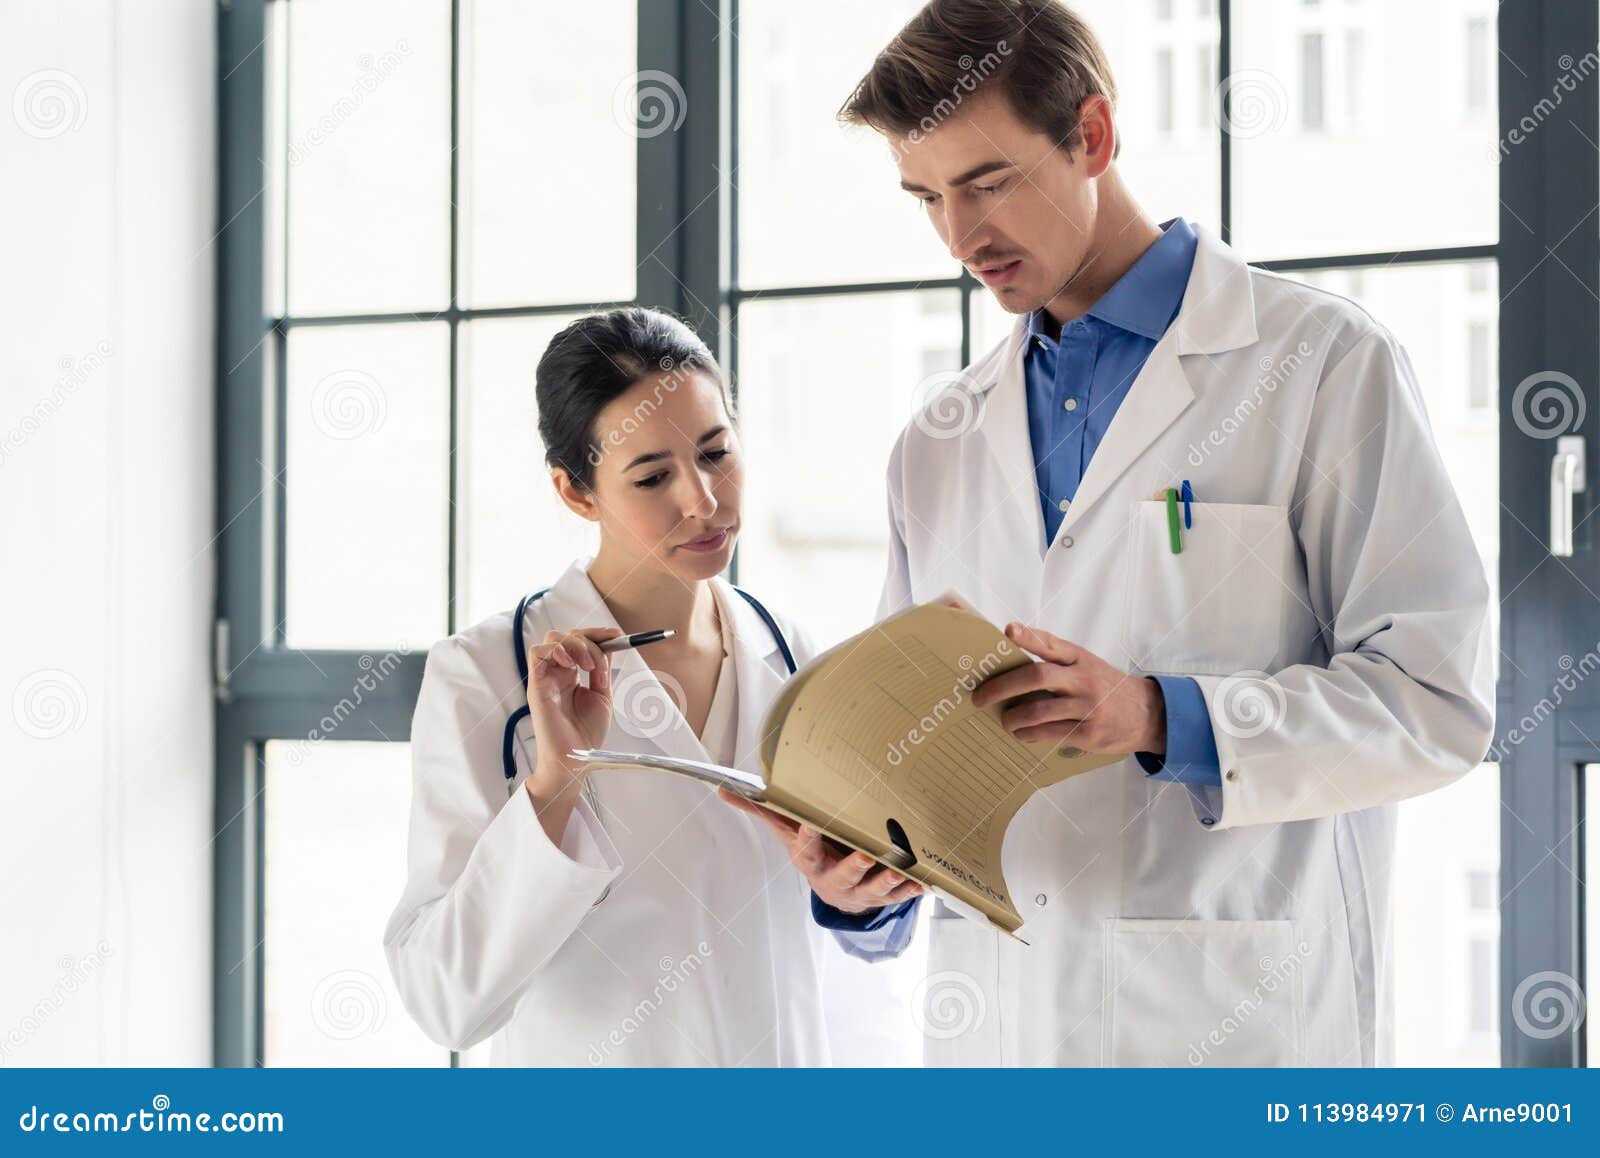 Врач 2 уровень. Два врача. Врачи вместе фото. Пациент и доктор вместе. Врач с папкой.